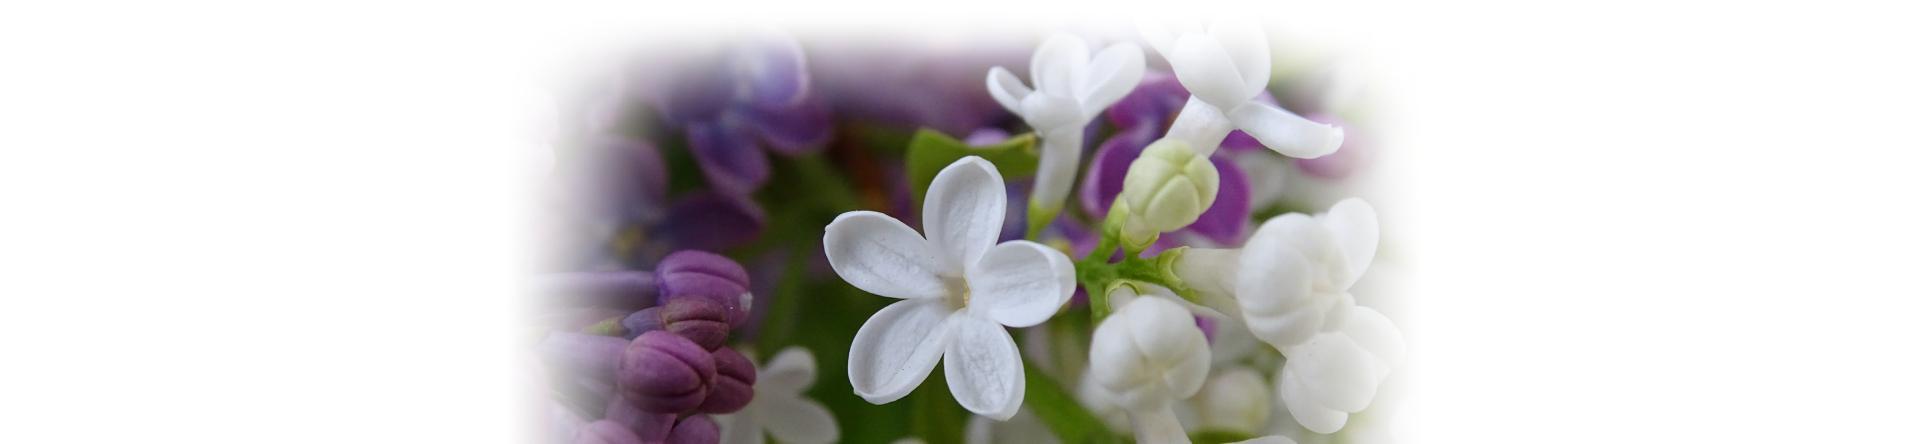 białe i fioletowe kwiaty w stopce